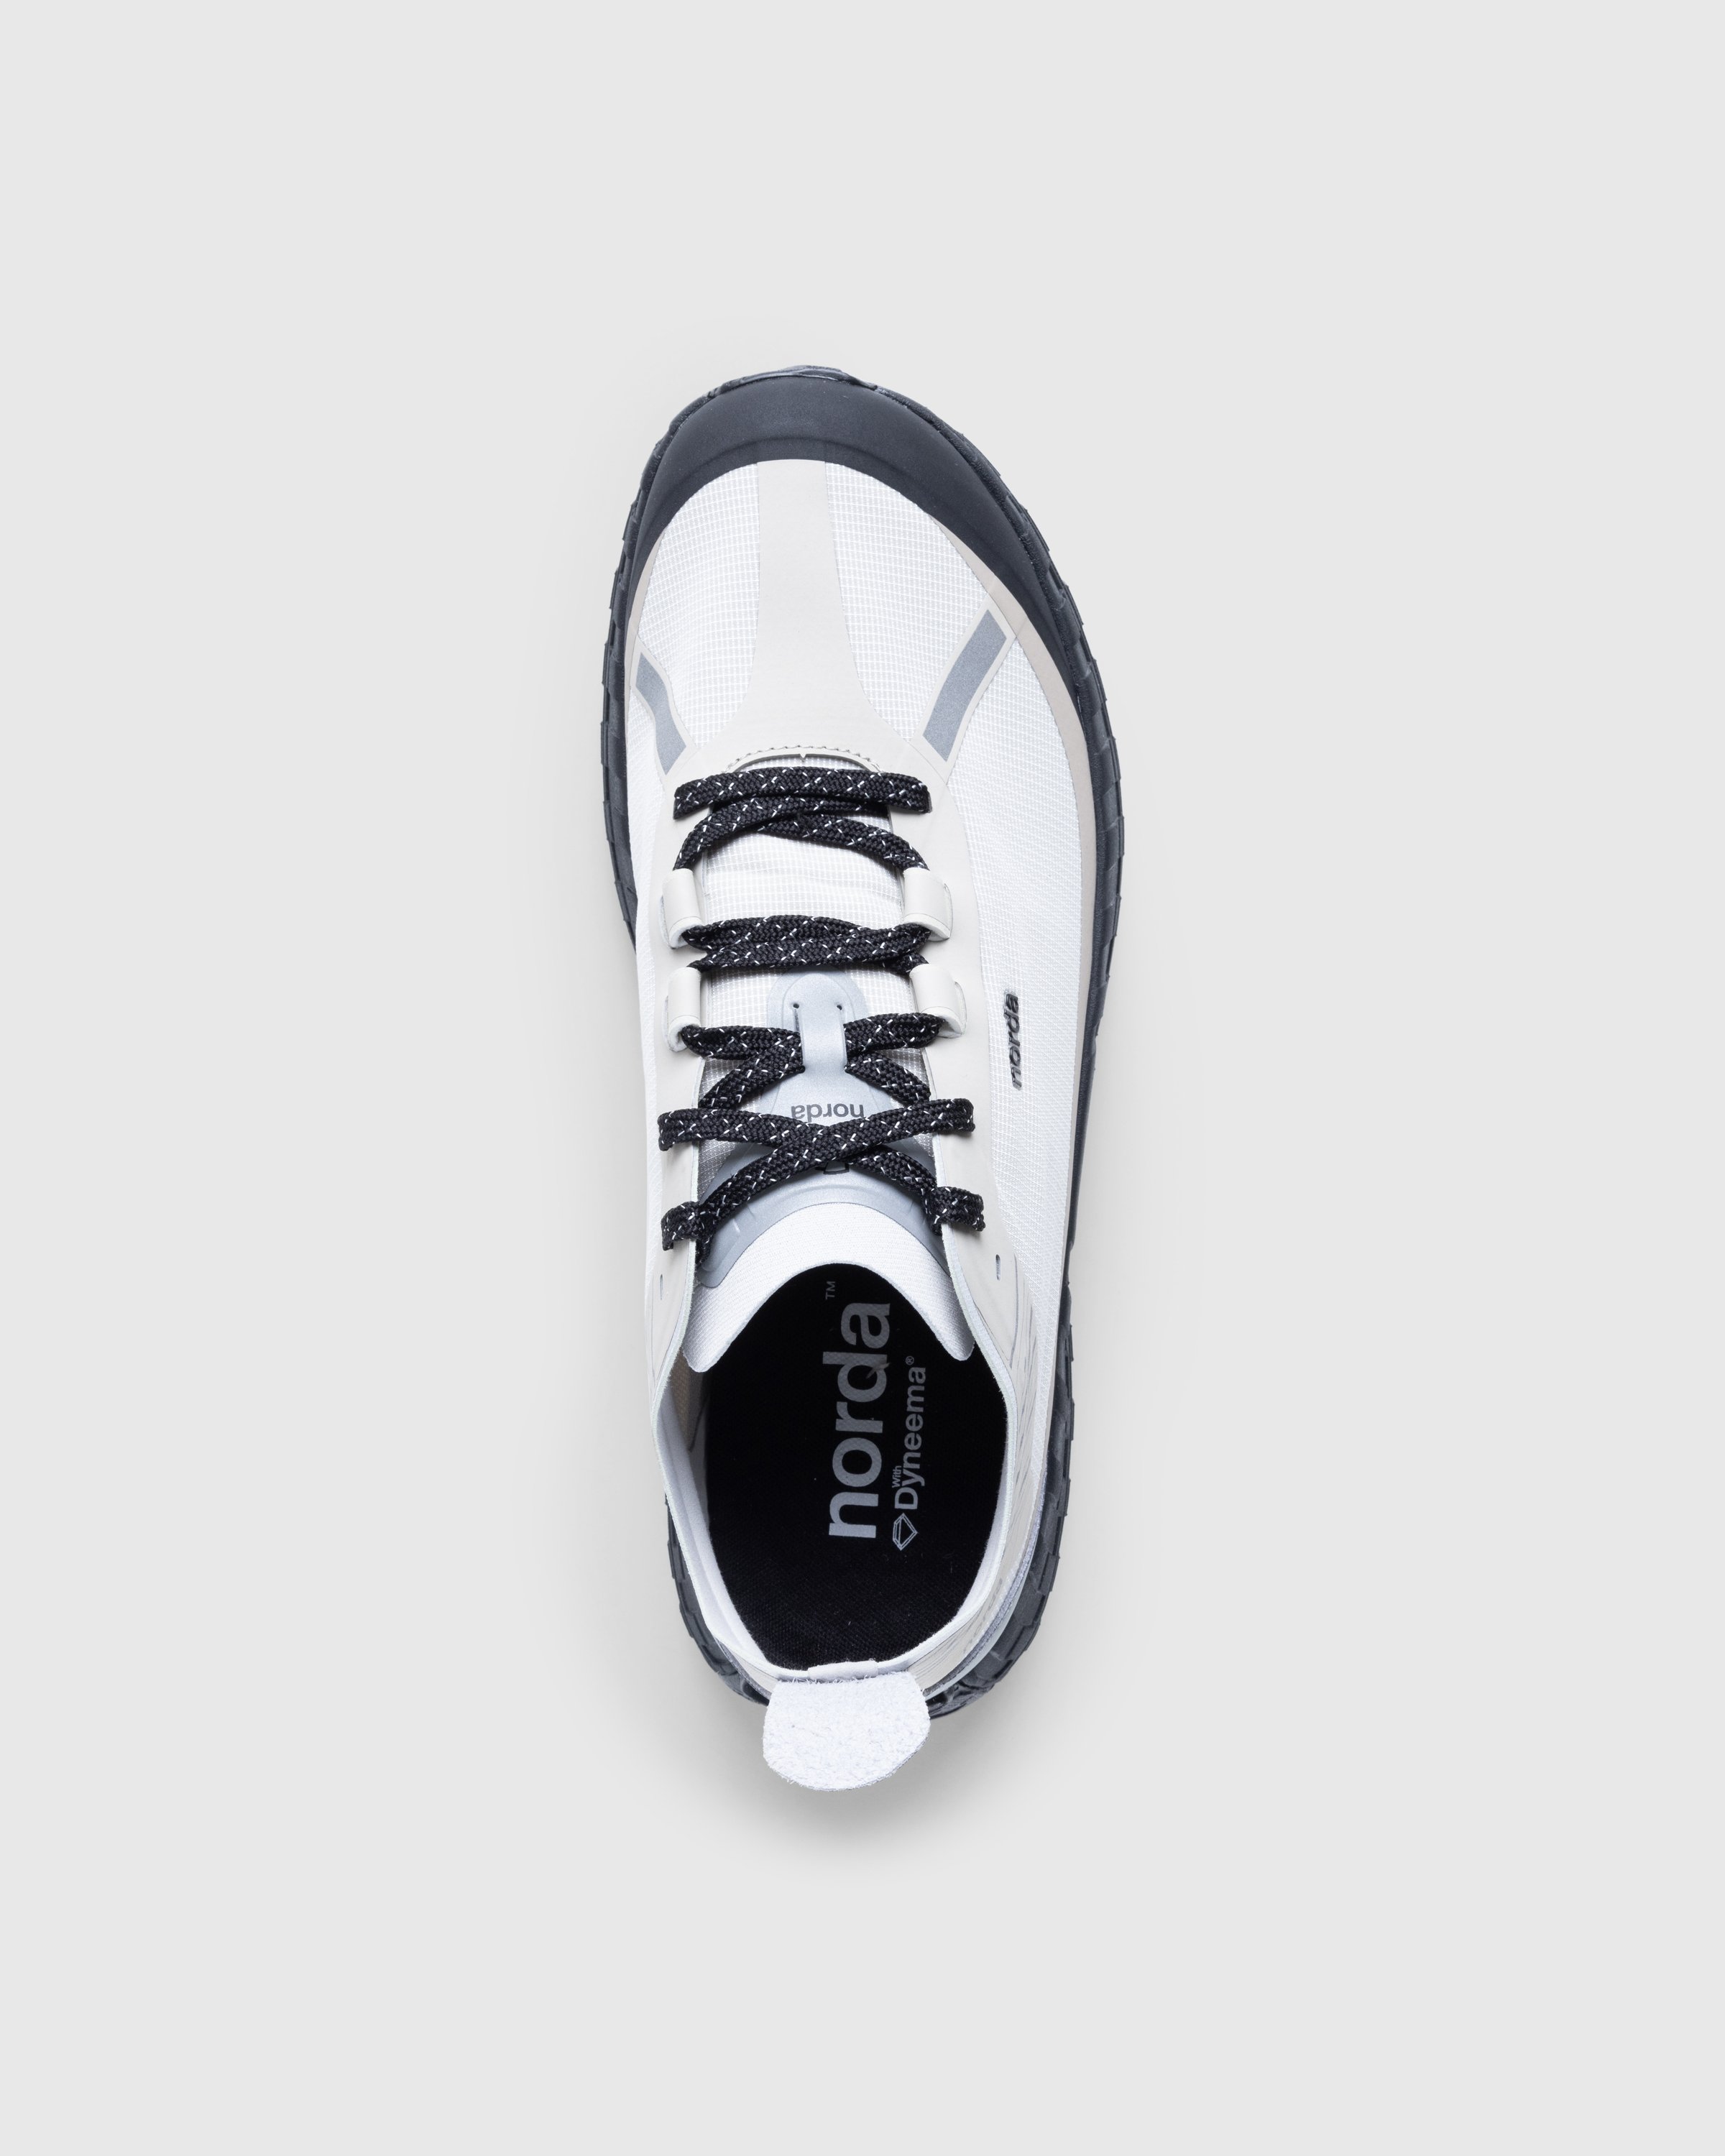 Norda - NORDA001-M - Footwear - Grey - Image 5